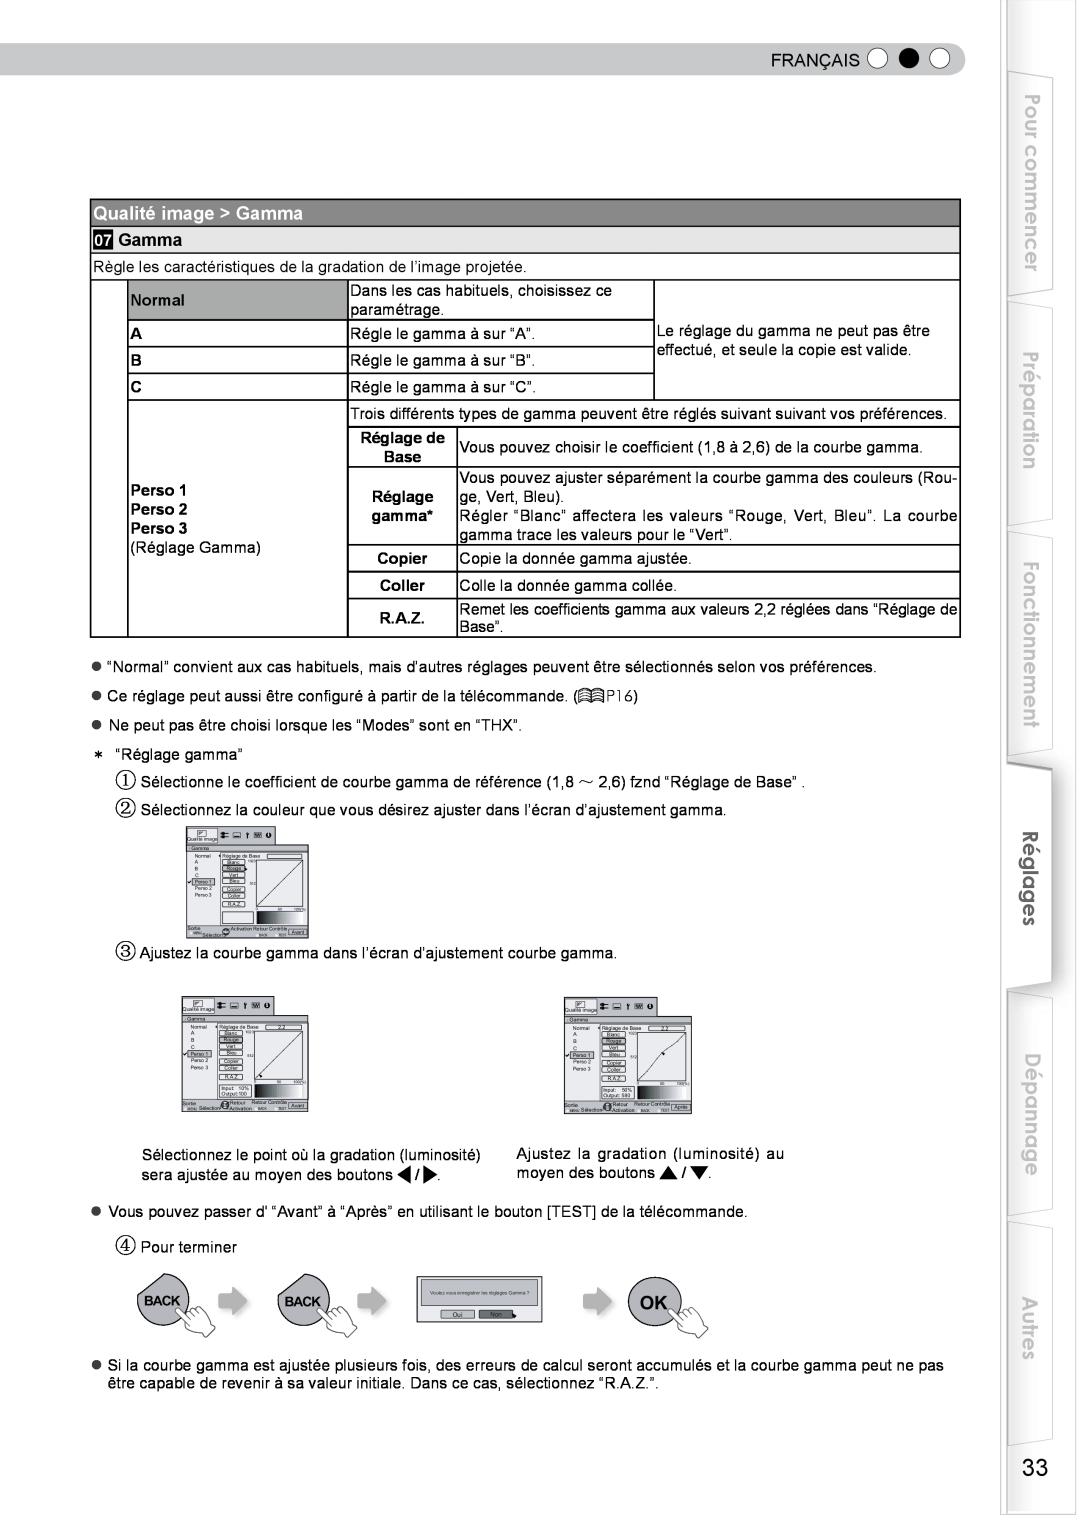 JVC DLA-HD750 manual Pour commencer Préparation Fonctionnement, Réglages, Dépannage Autres, Qualité image Gamma, Français 